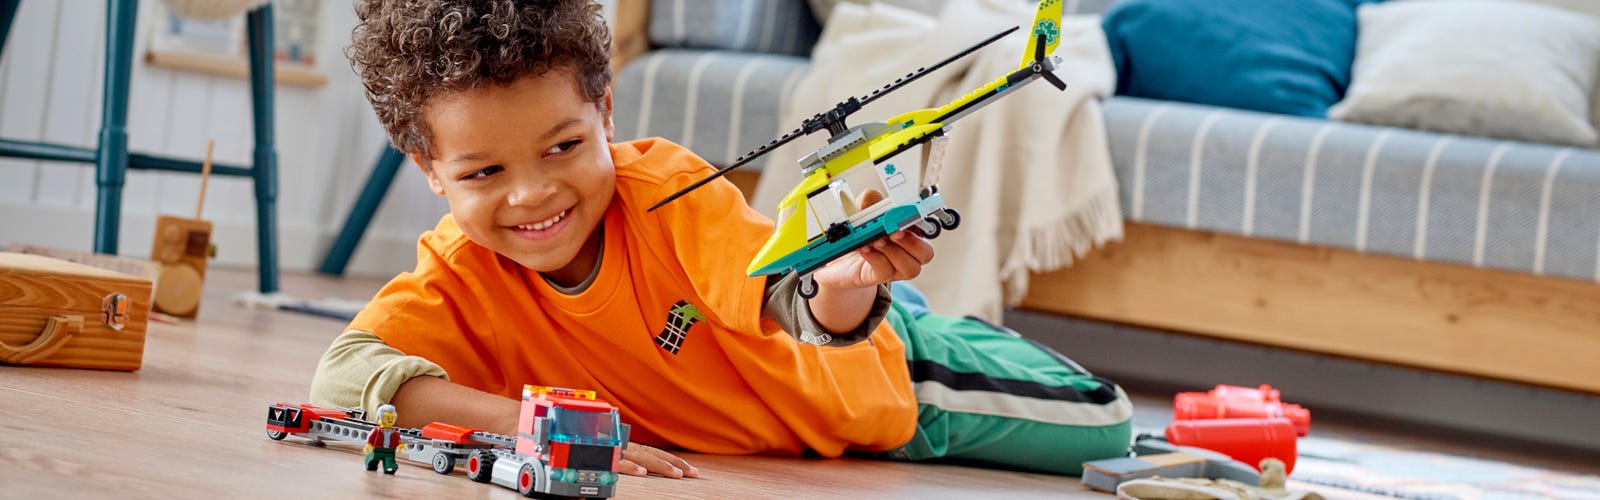 I fare Bore Drejning Det bedste pædagogiske legetøj til børn på 5 år | Officiel LEGO® Shop DK